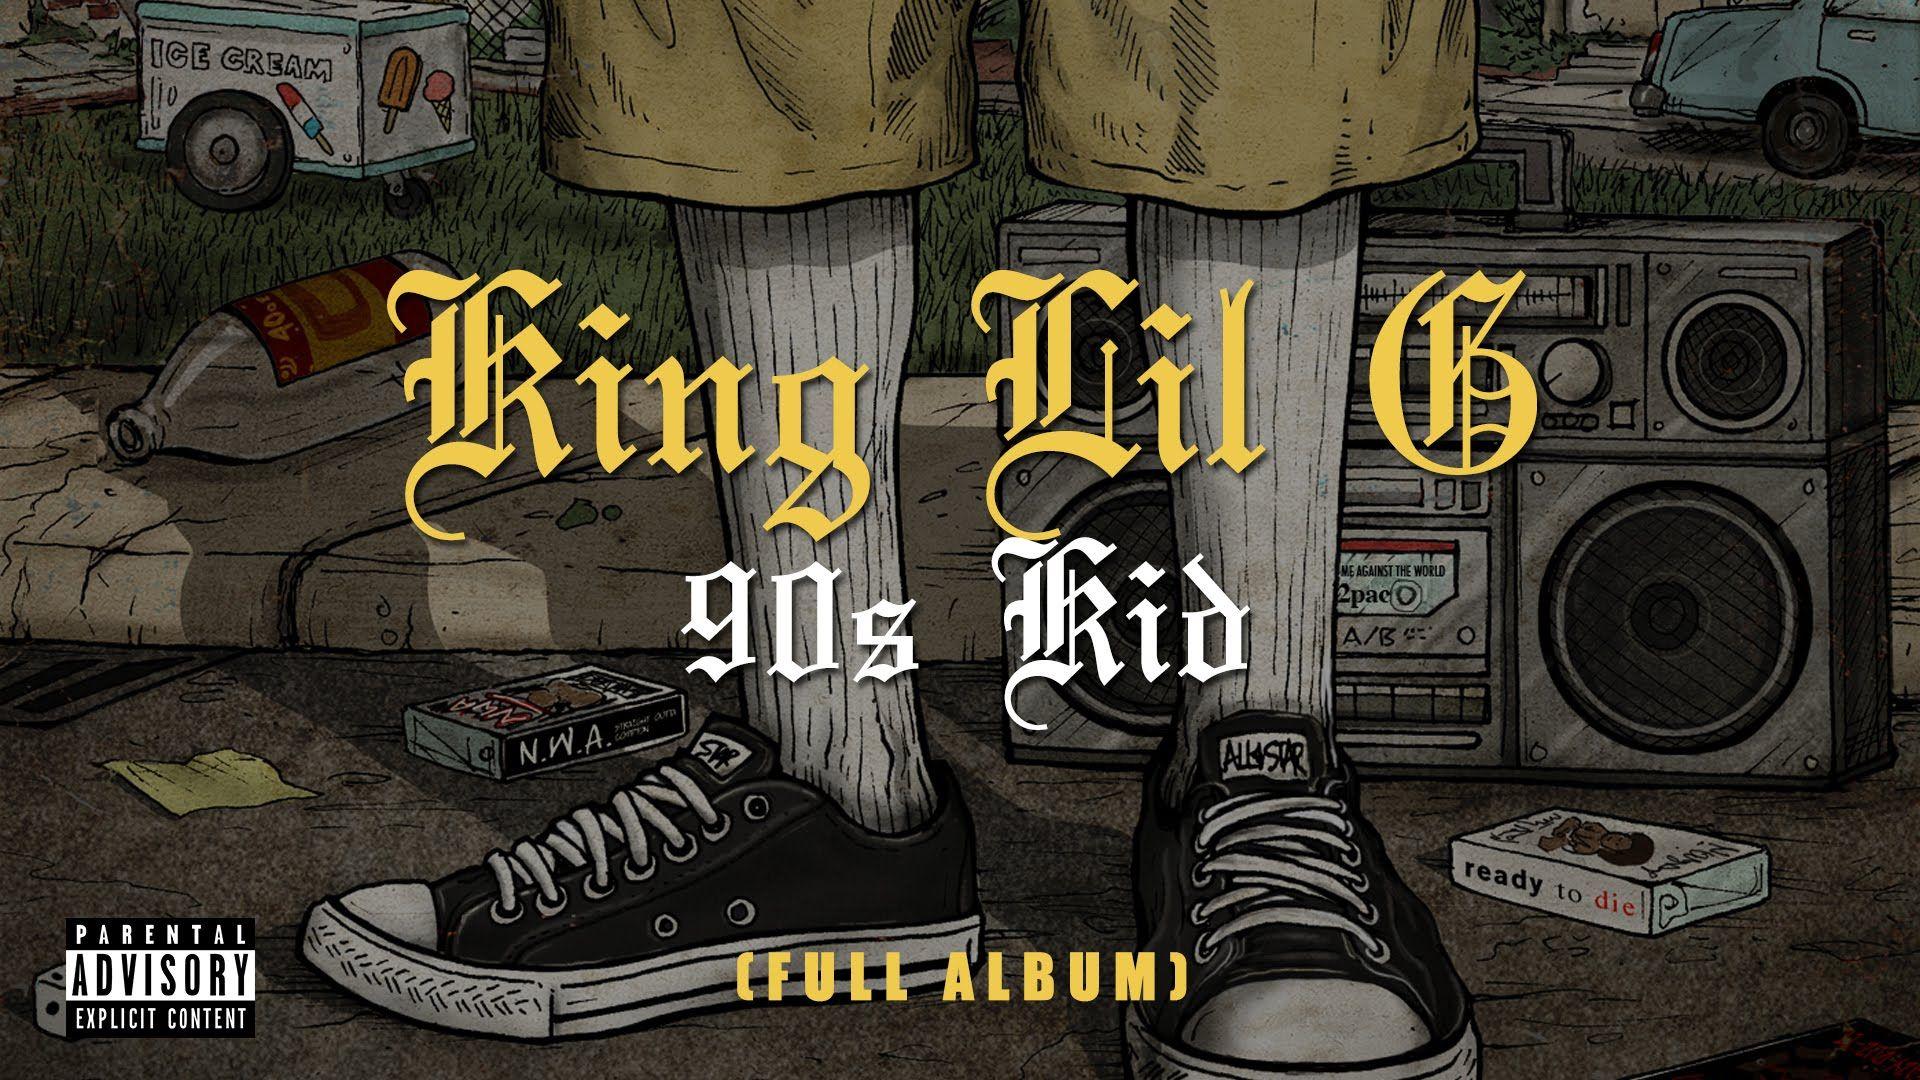 King Lil G's Kid (FULL ALBUM)